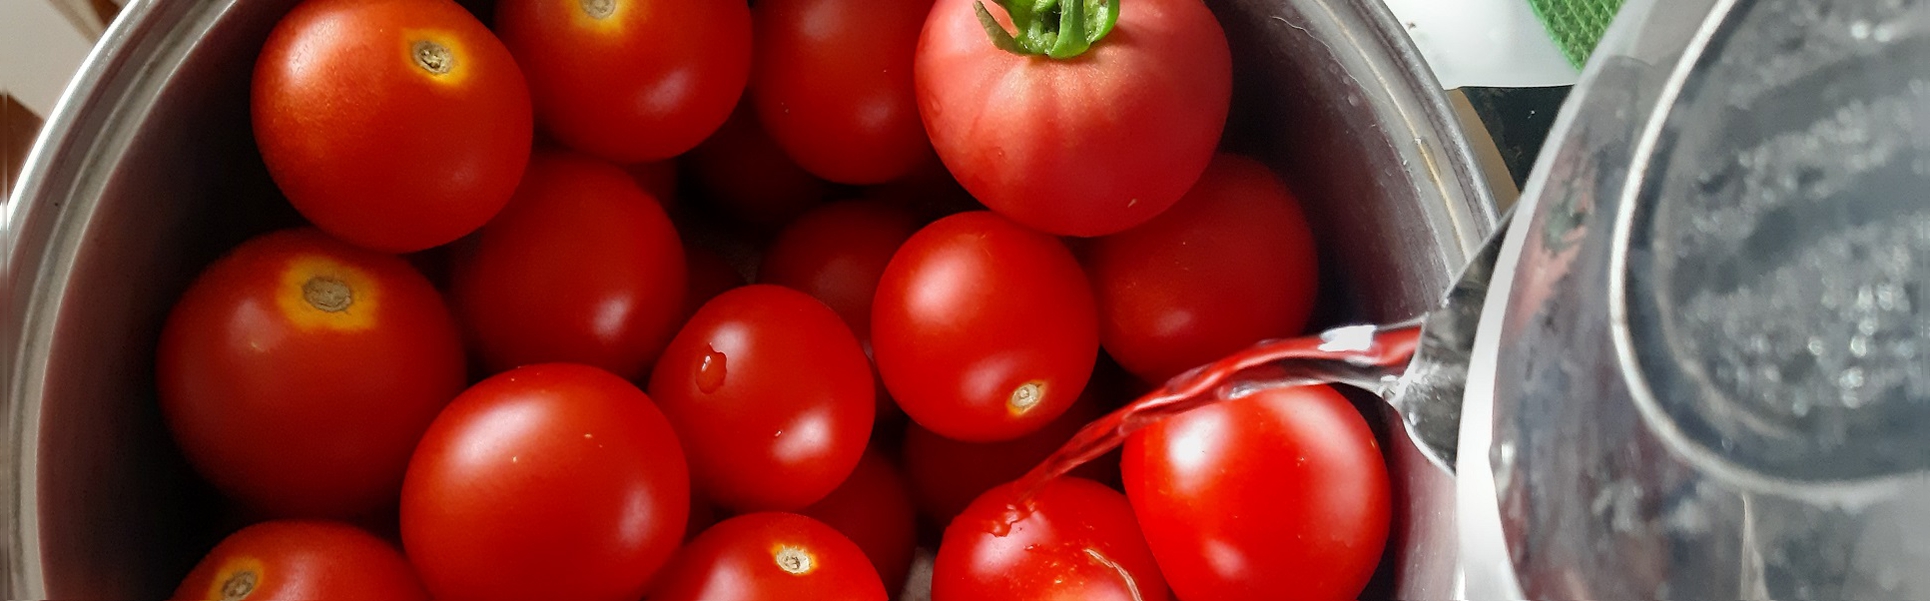 Готовит Наташа: домашний кетчуп и маринованные помидоры